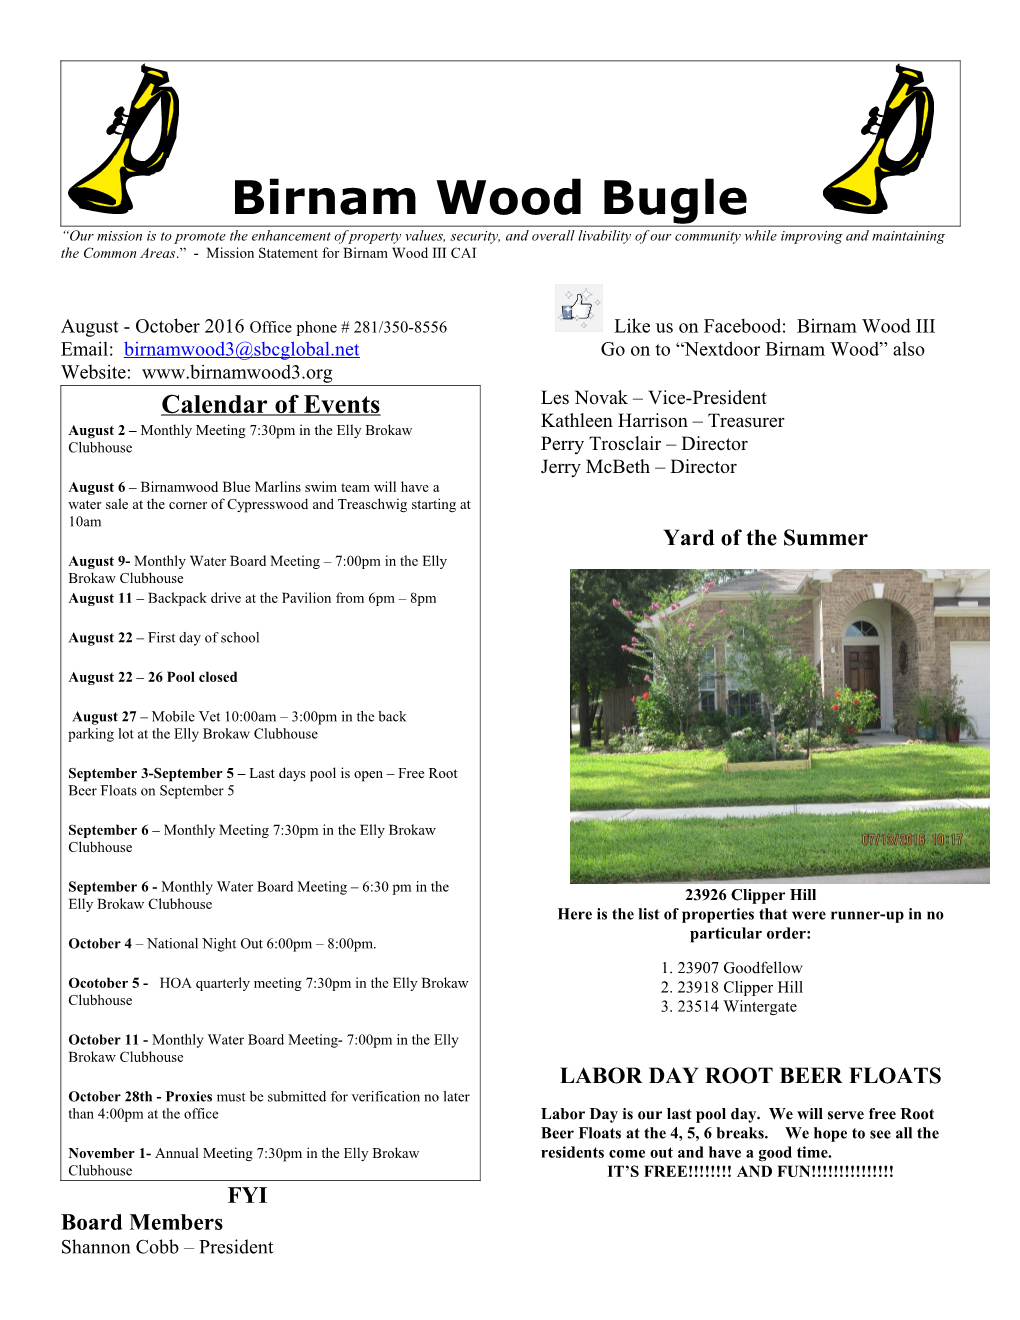 Email: Go on to Nextdoor Birnam Wood Also